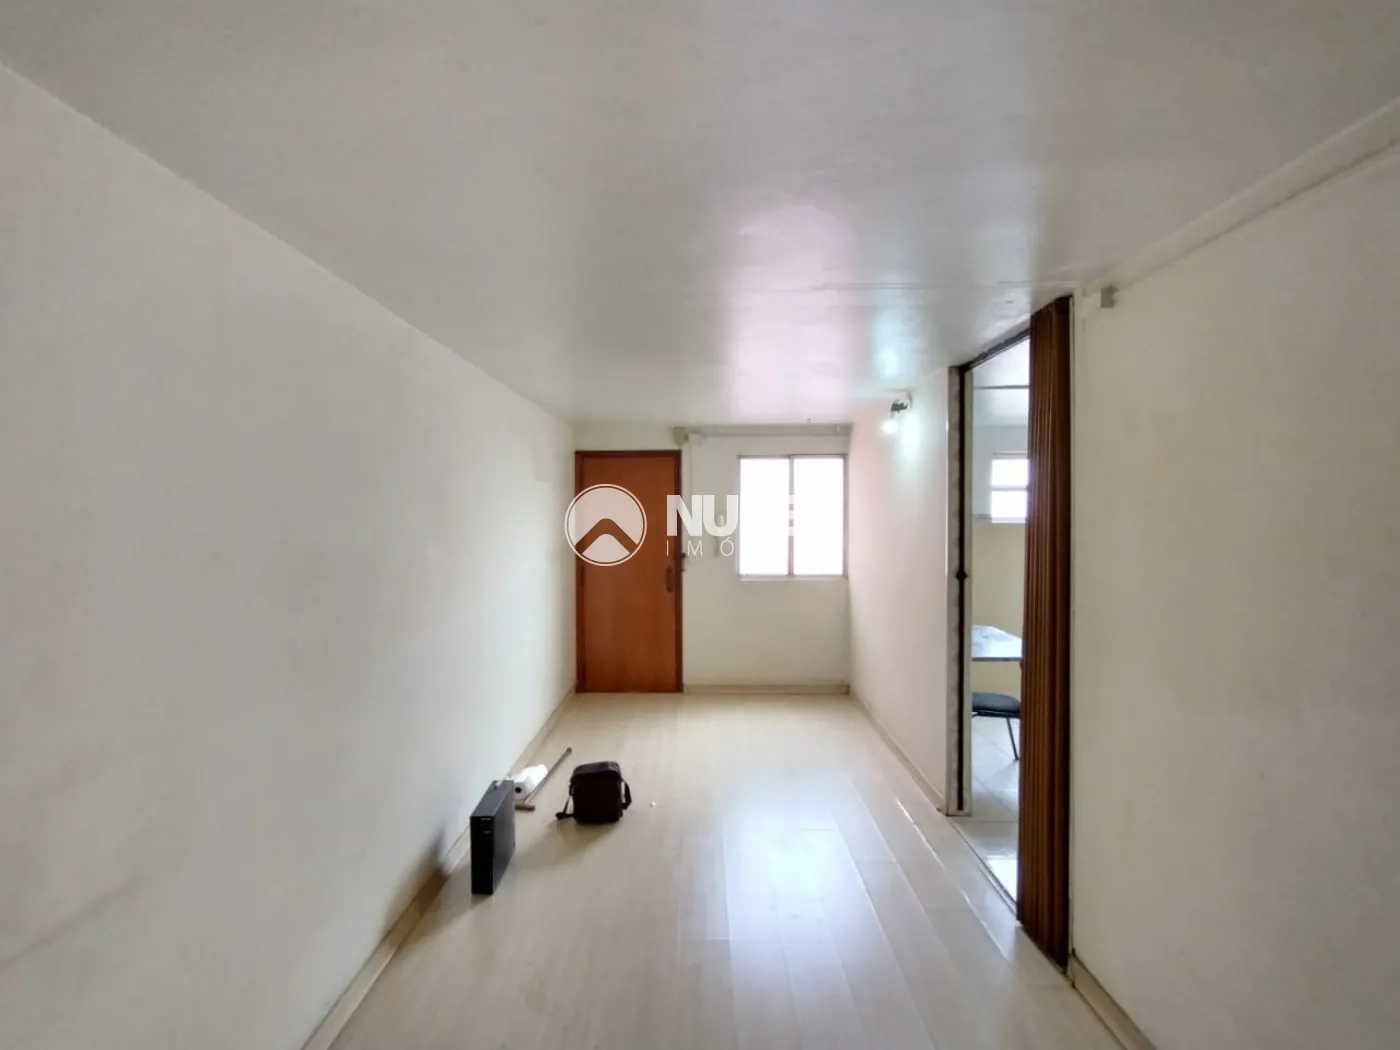 Alugar Apartamento / Padrão em Carapicuíba R$ 990,00 - Foto 2